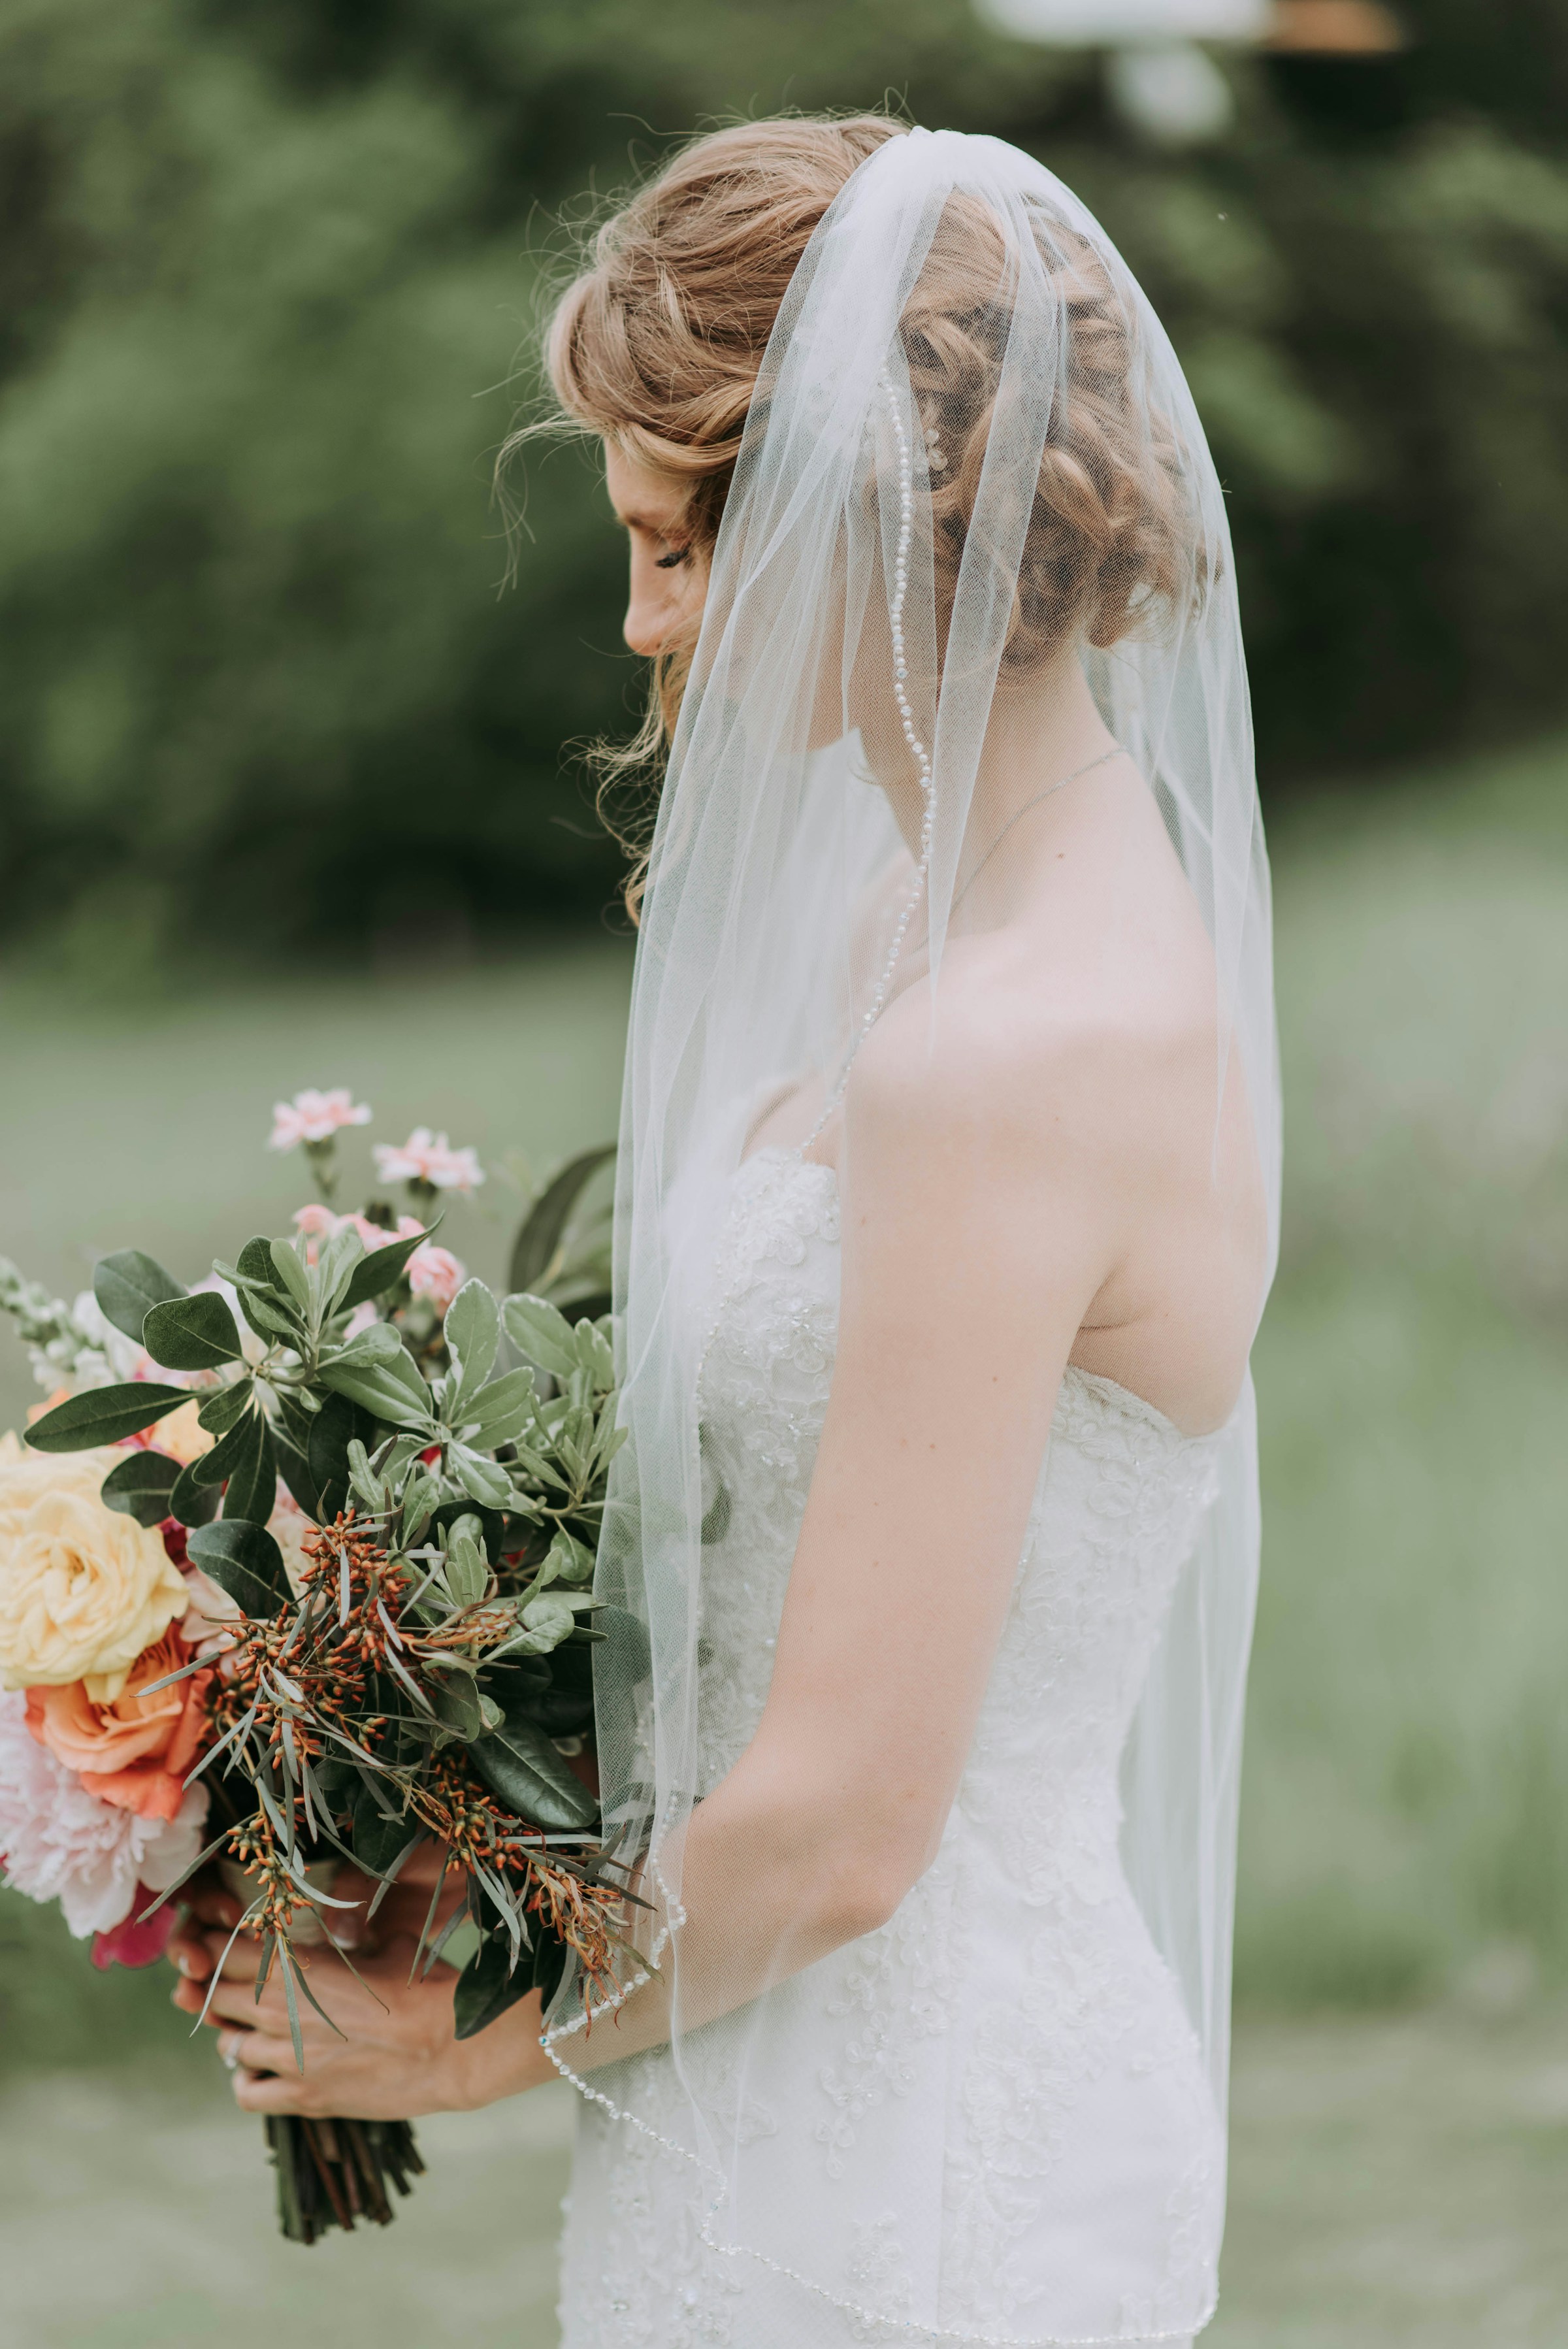 Una novia sujetando un ramo | Fuente: Unsplash